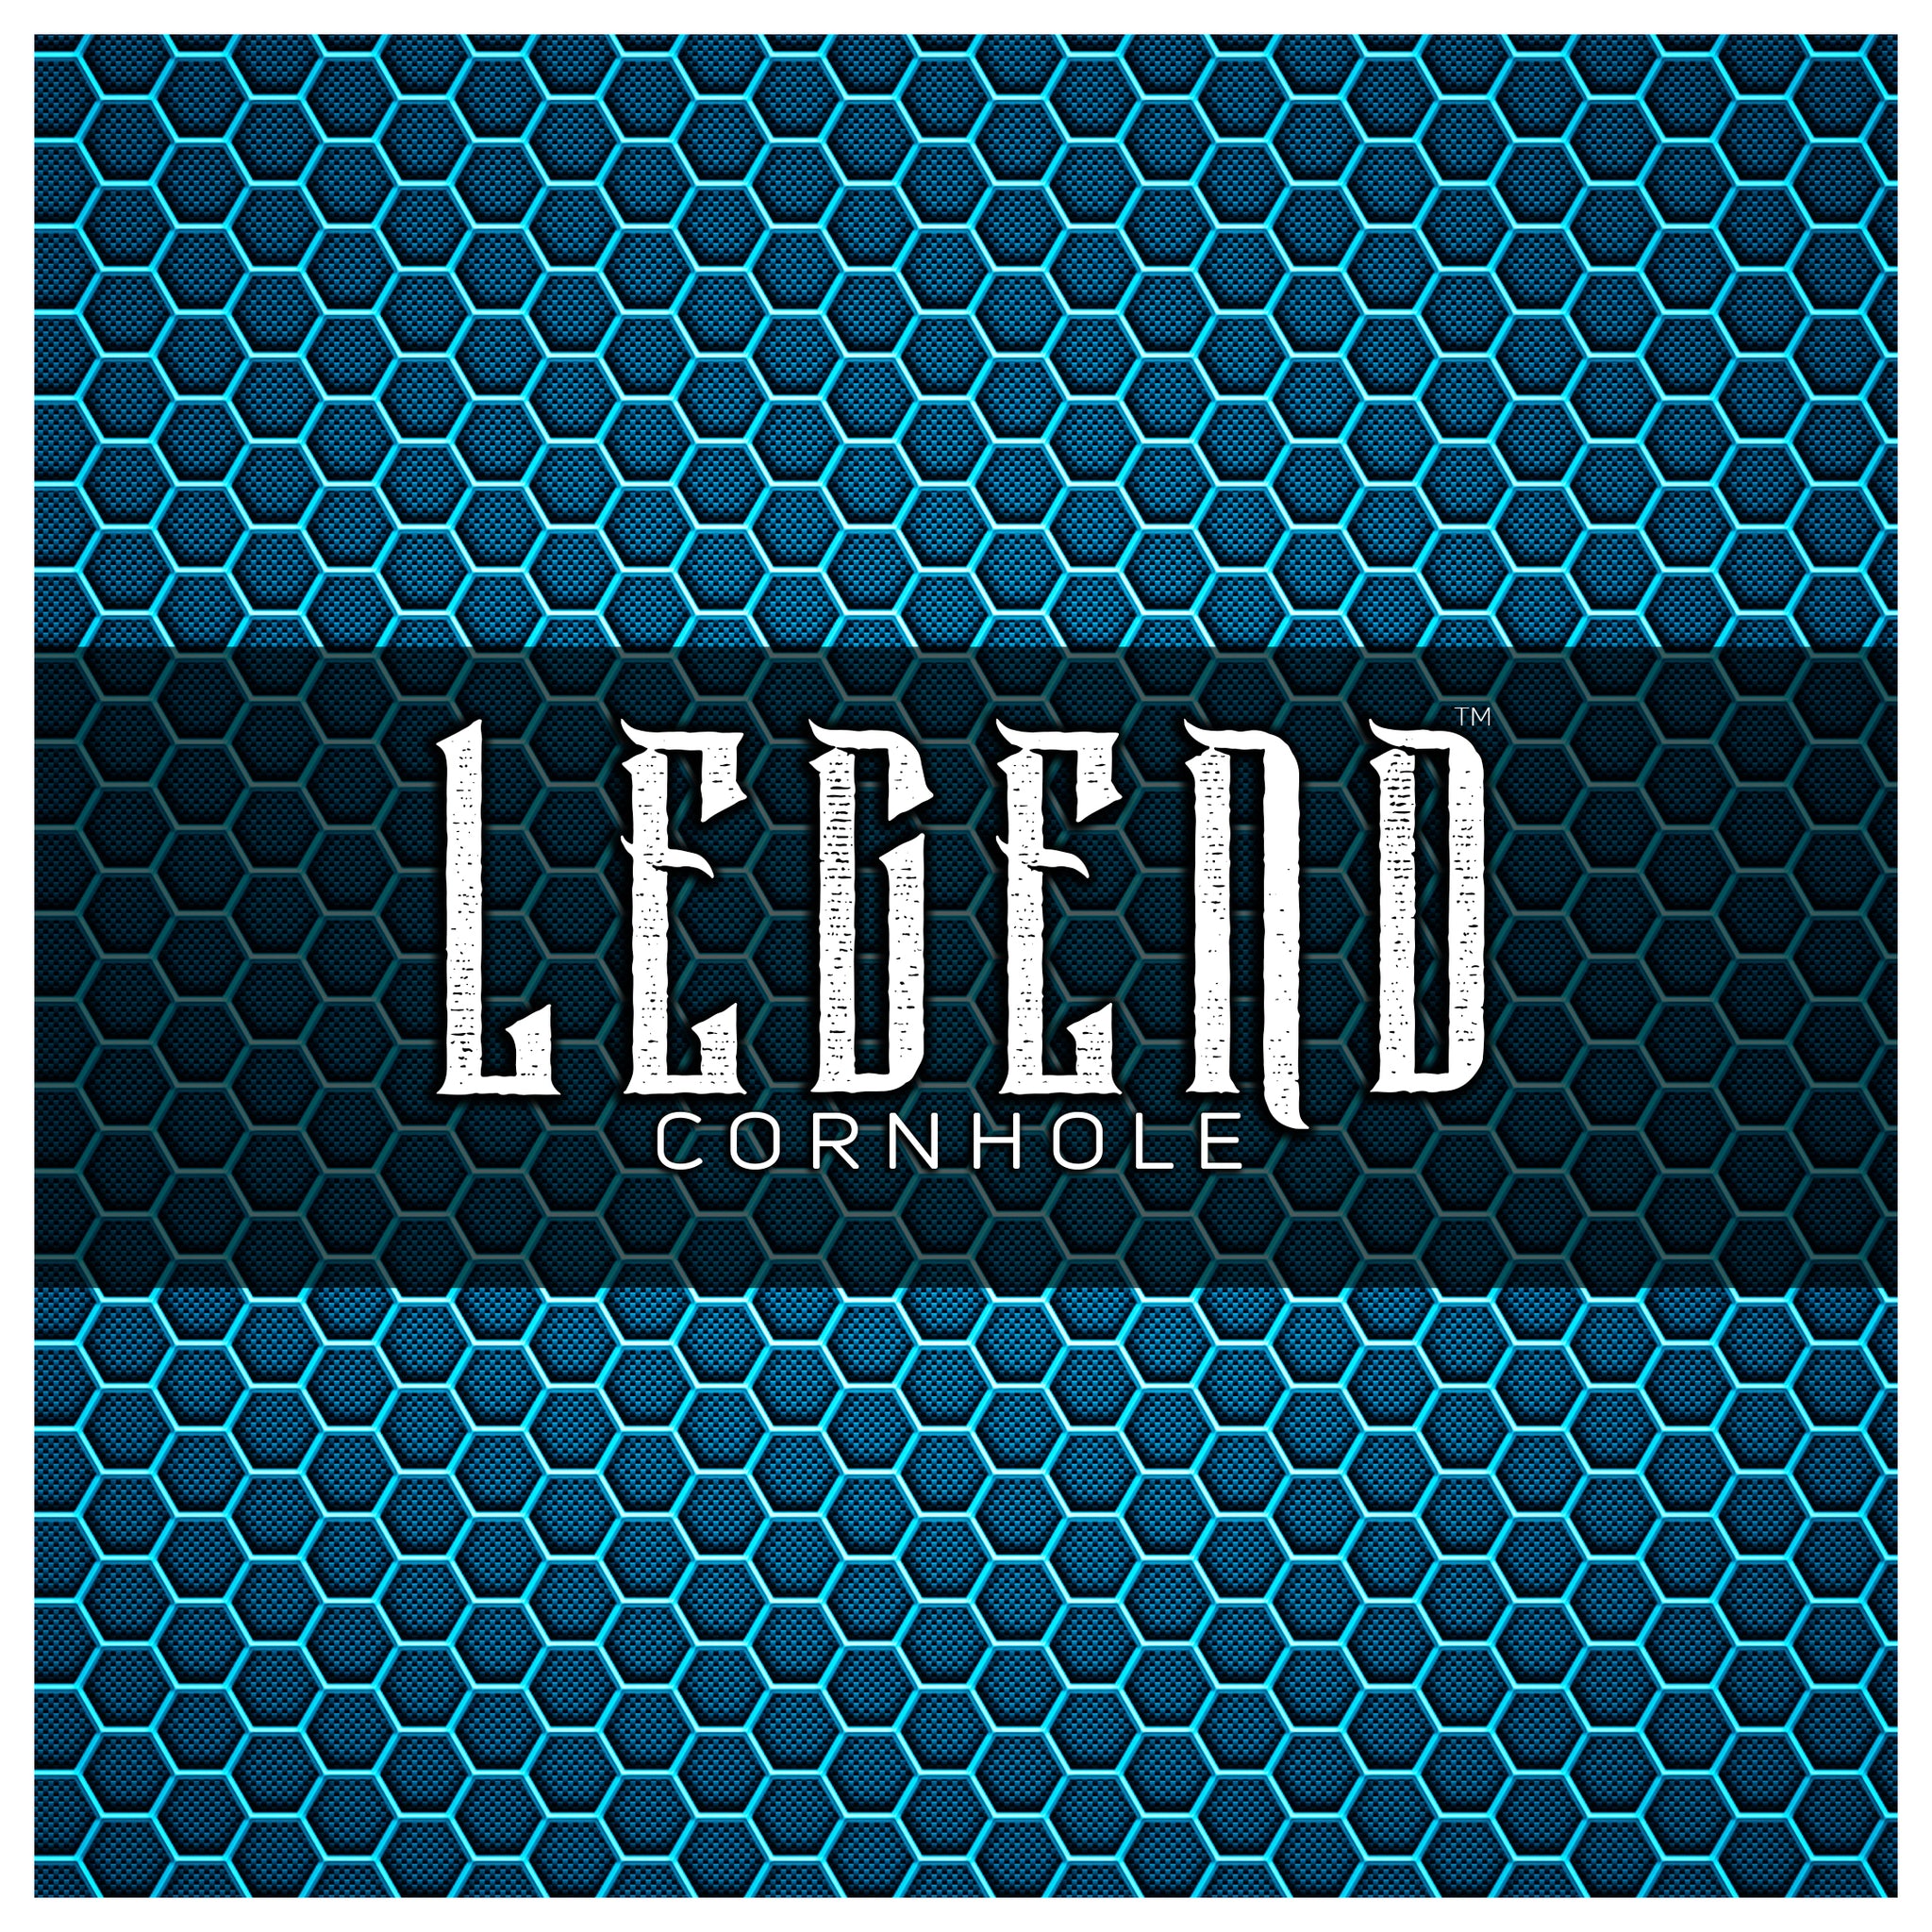 Legend™ "ALL IN™" Premium Cornhole Bag (set of 4) -(CC)